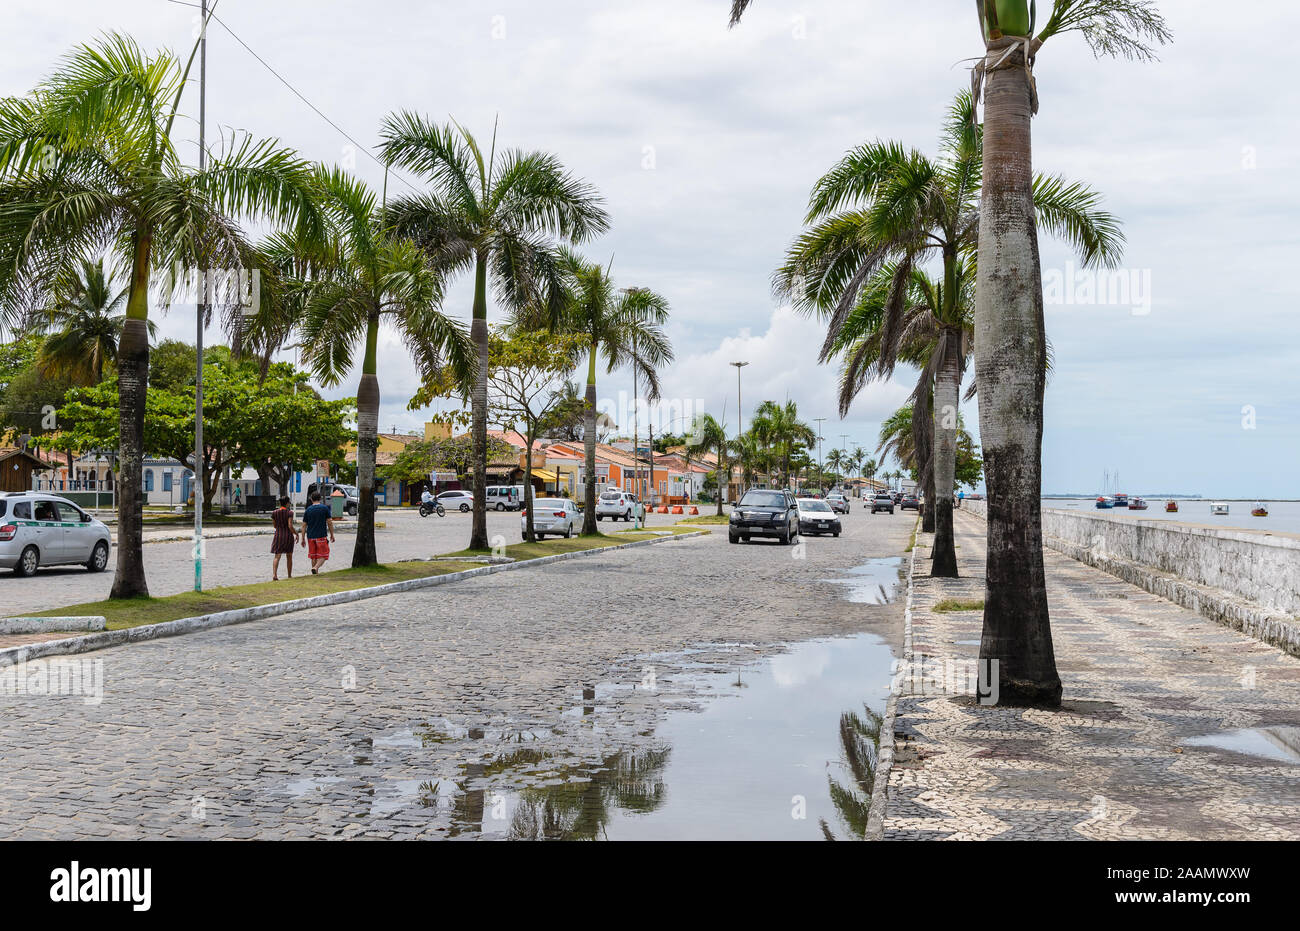 Des palmiers bordent la rue du port de la ville Porto Seguro, Bahia, Brésil, Amérique du Sud. Banque D'Images